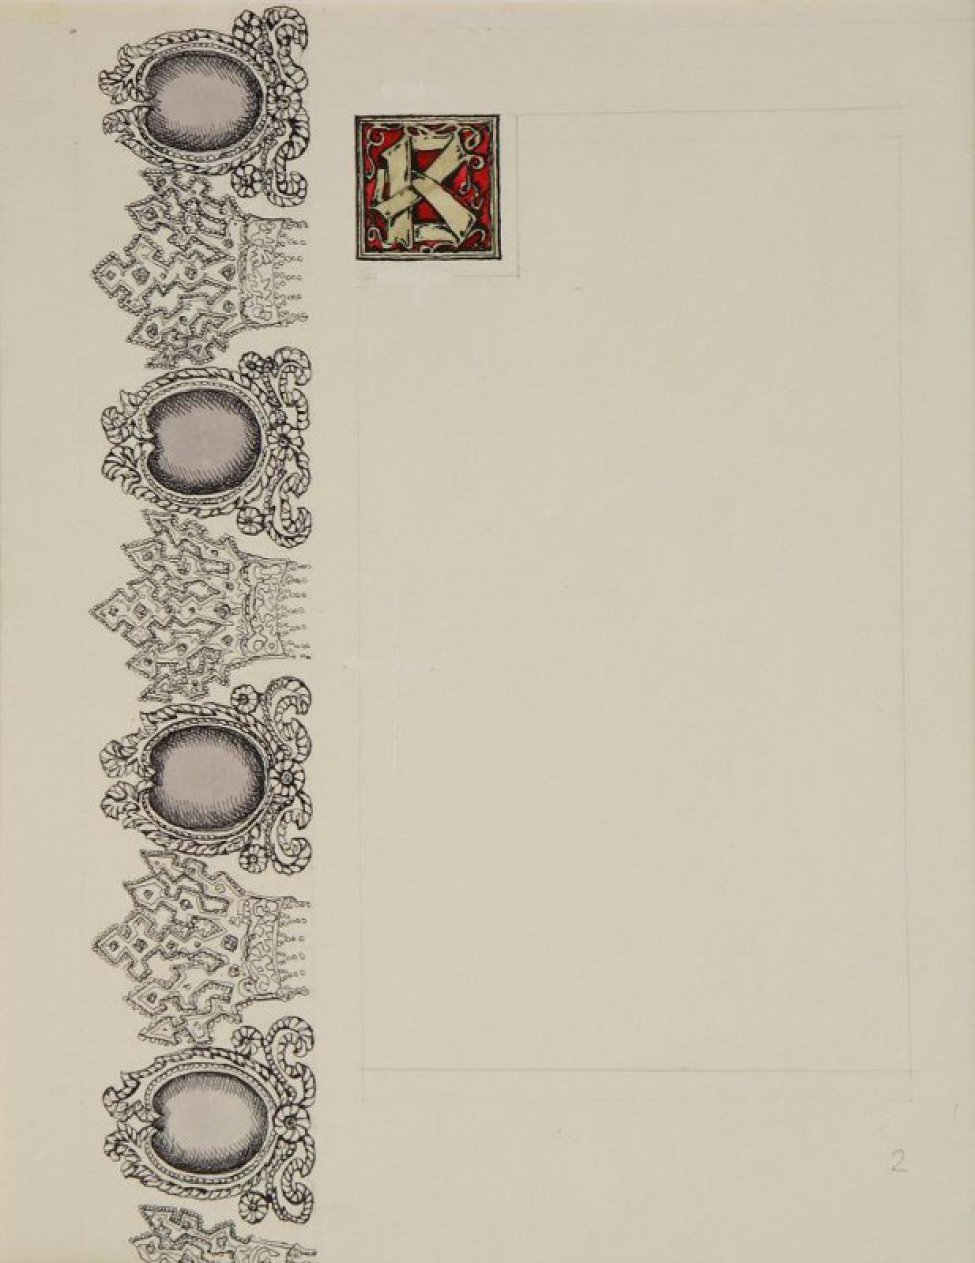 В левой части листа по вертикали - орнамент из венцов и зеркал. В верхней части, справа от орнамента - орнаментированная буква "В" в квадрате на красном фоне.